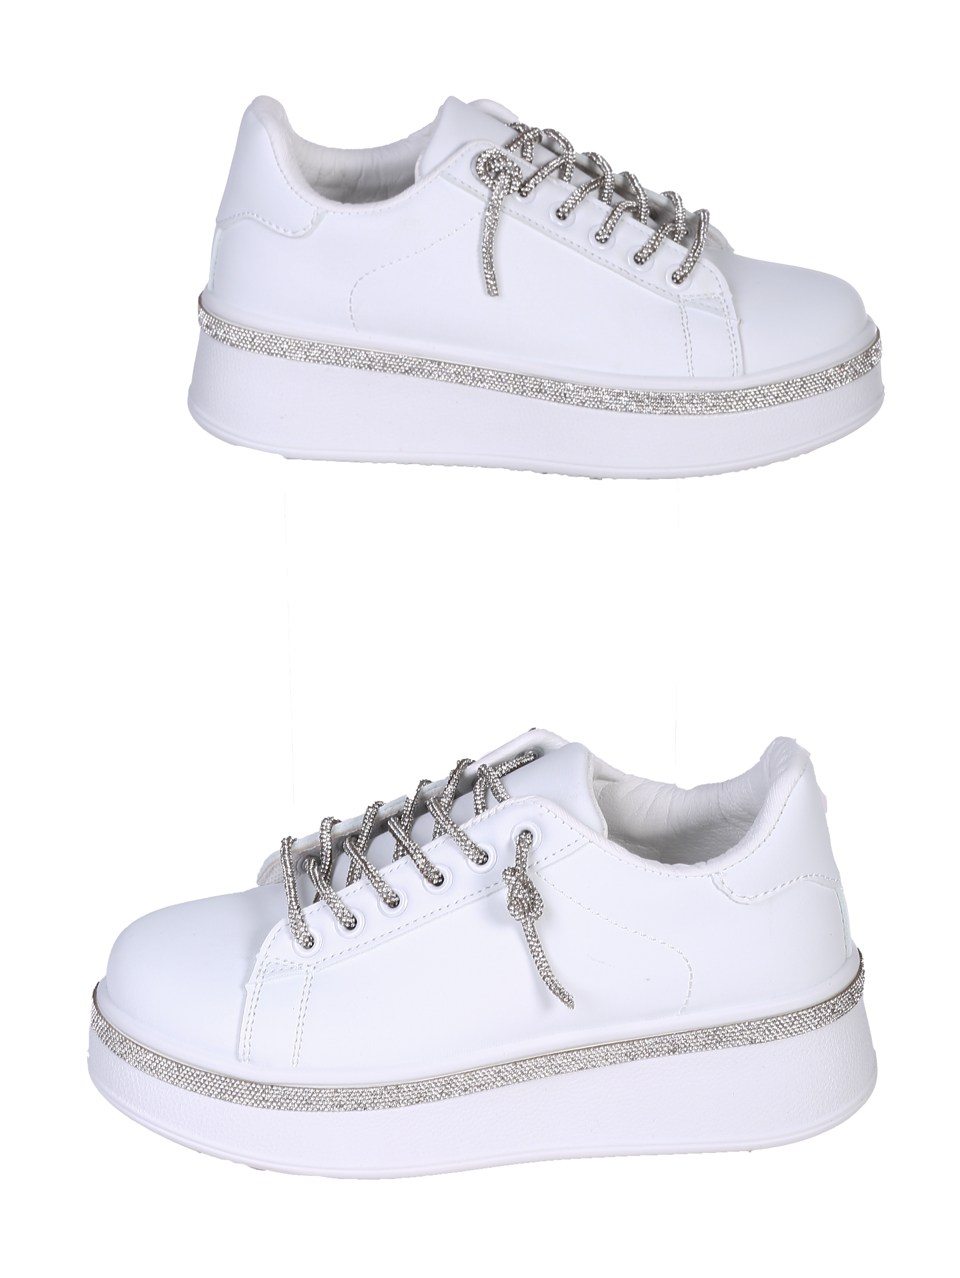 Ежедневни дамски обувки в бял/сребрист цвят 3U-24216 white/silver